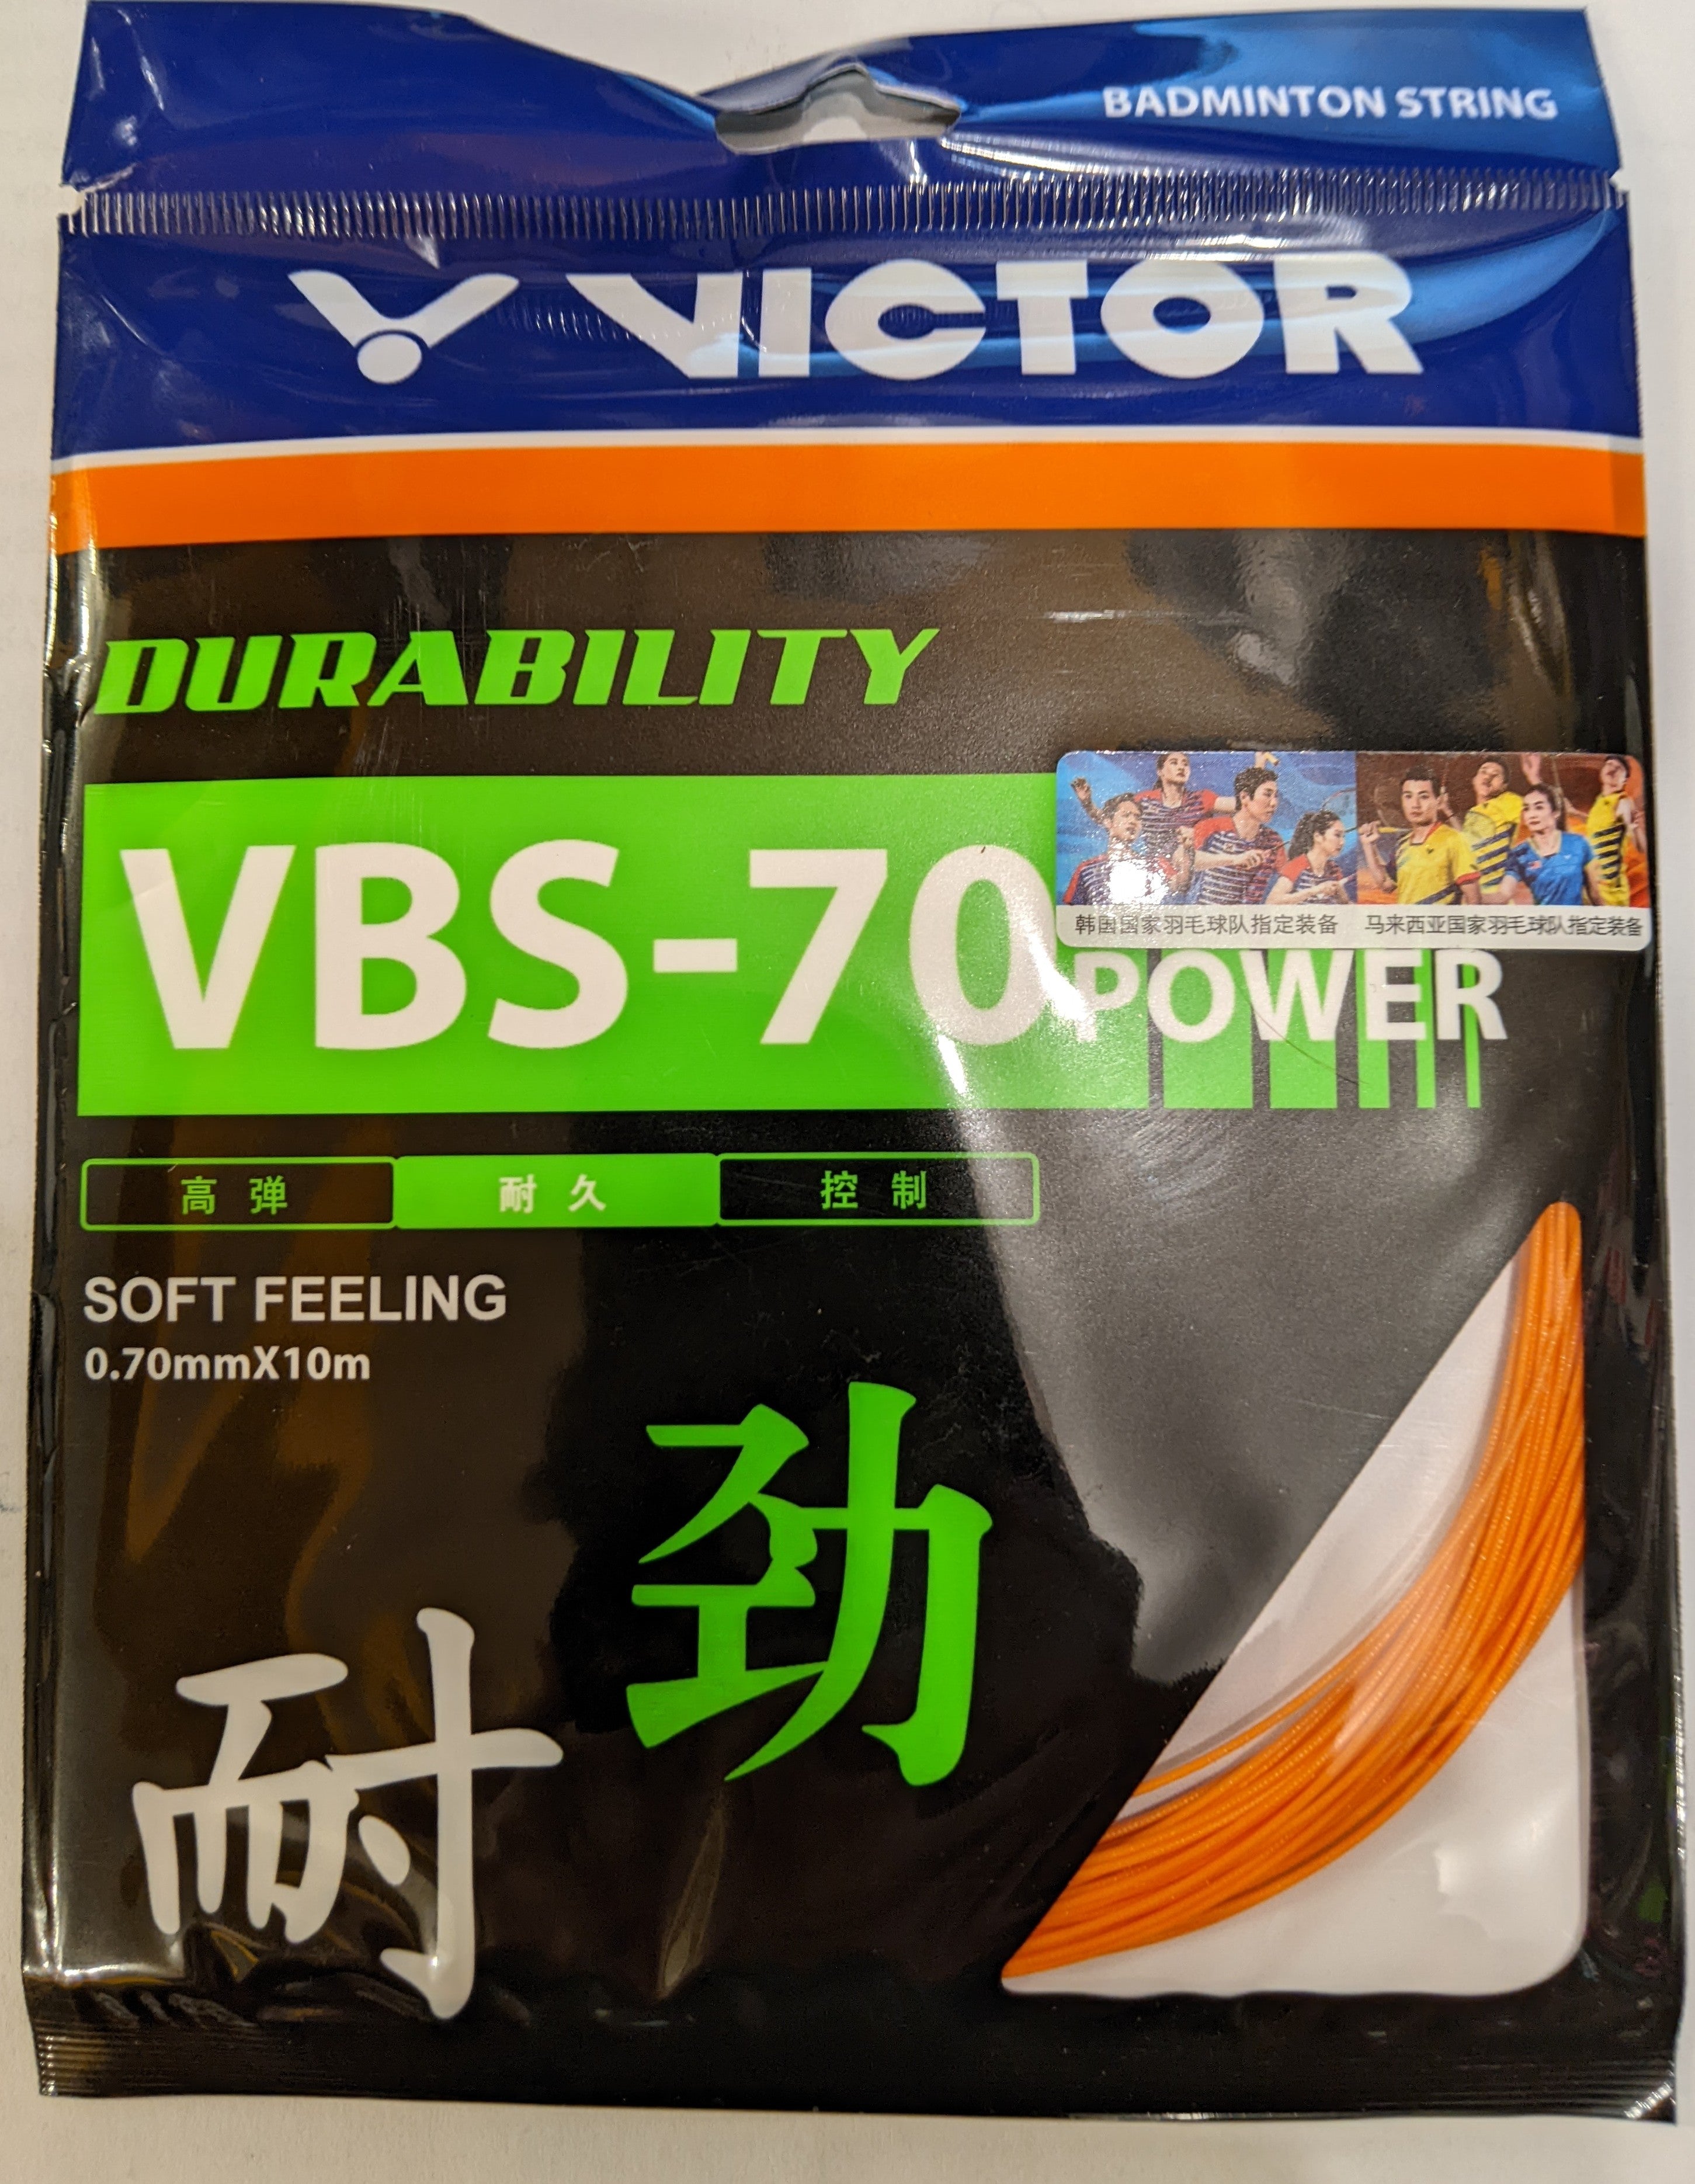 Victor VBS-66 Nano 10m White